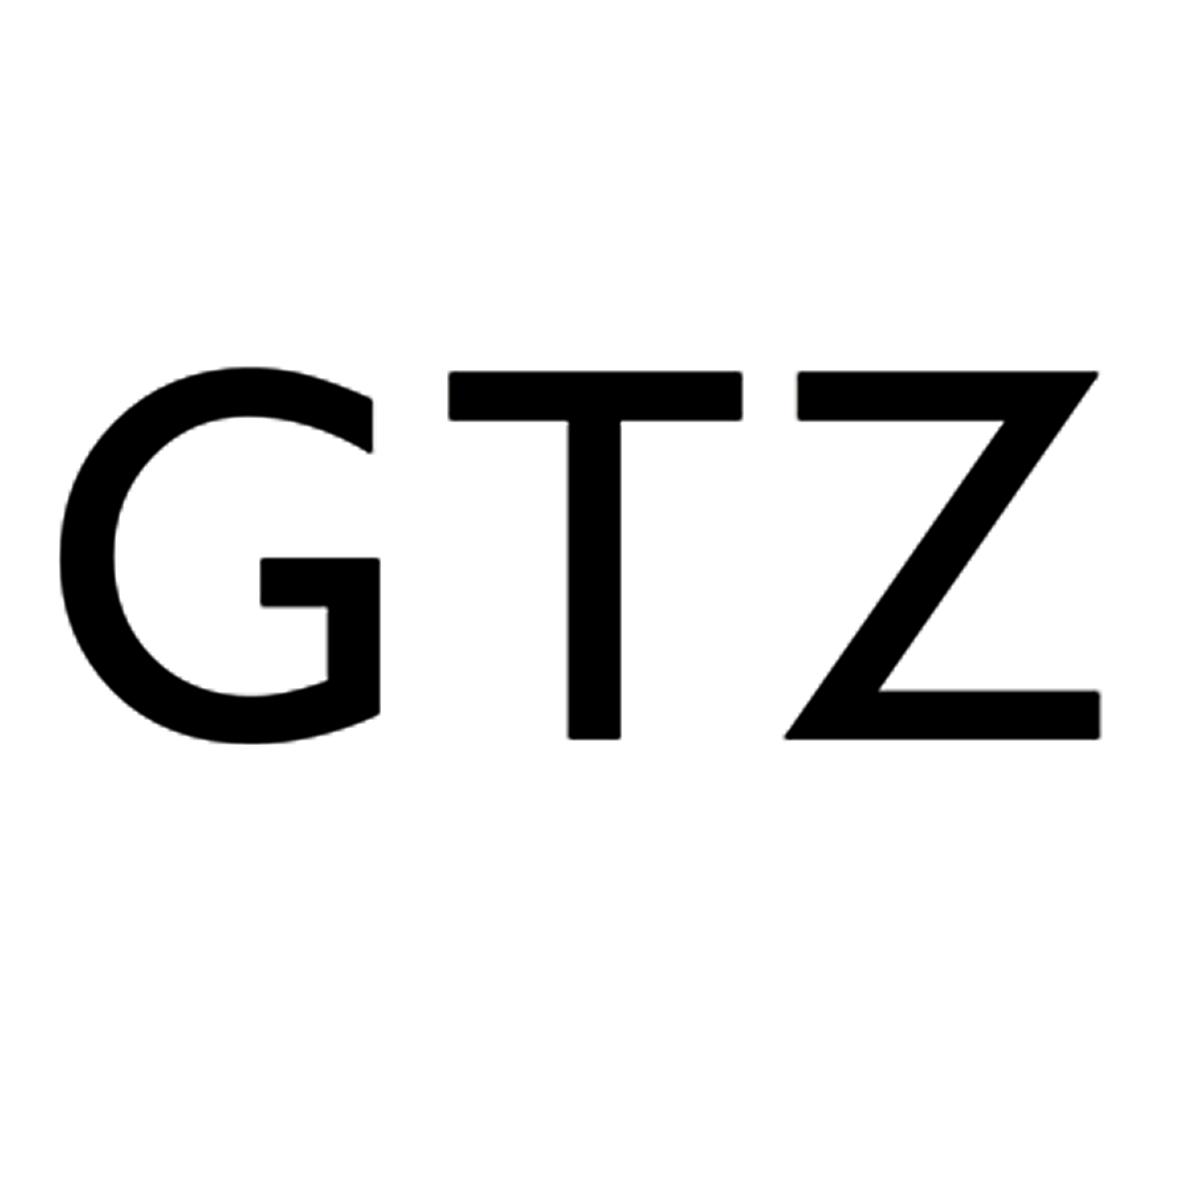 GTZ